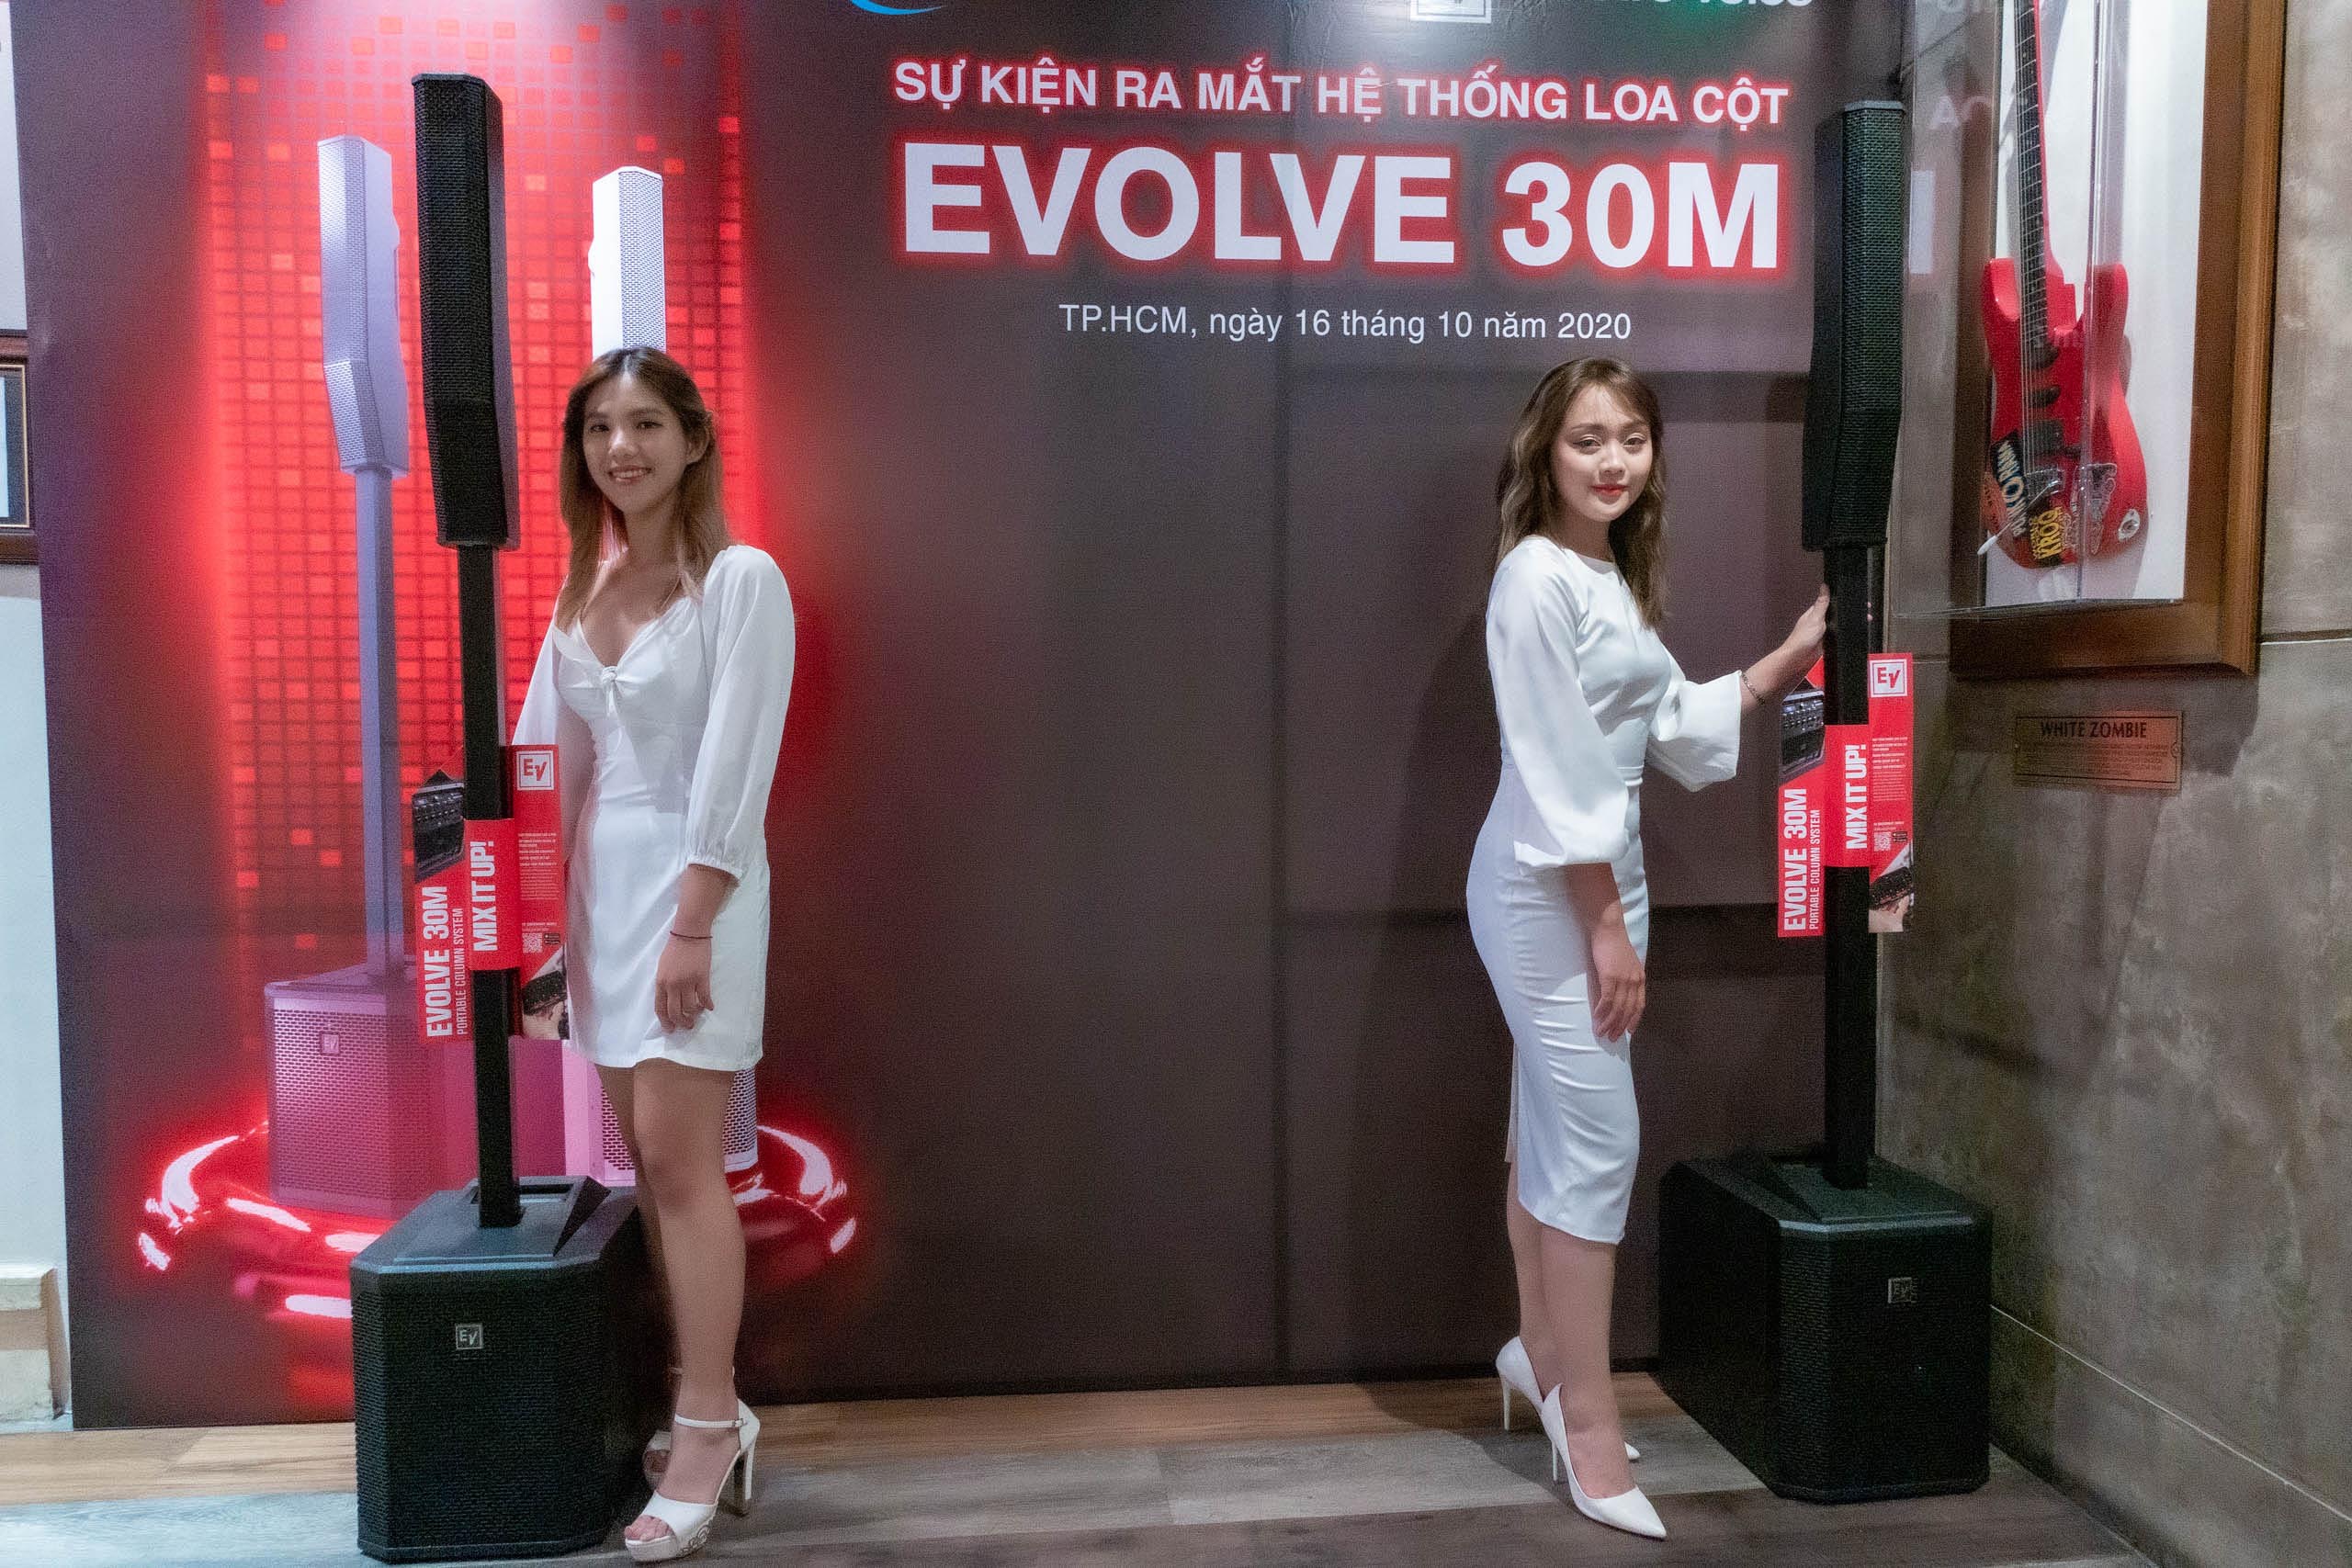 Electro-Voice chính thức ra mắt hệ thống loa cột EVOLVE 30M tại Việt Nam